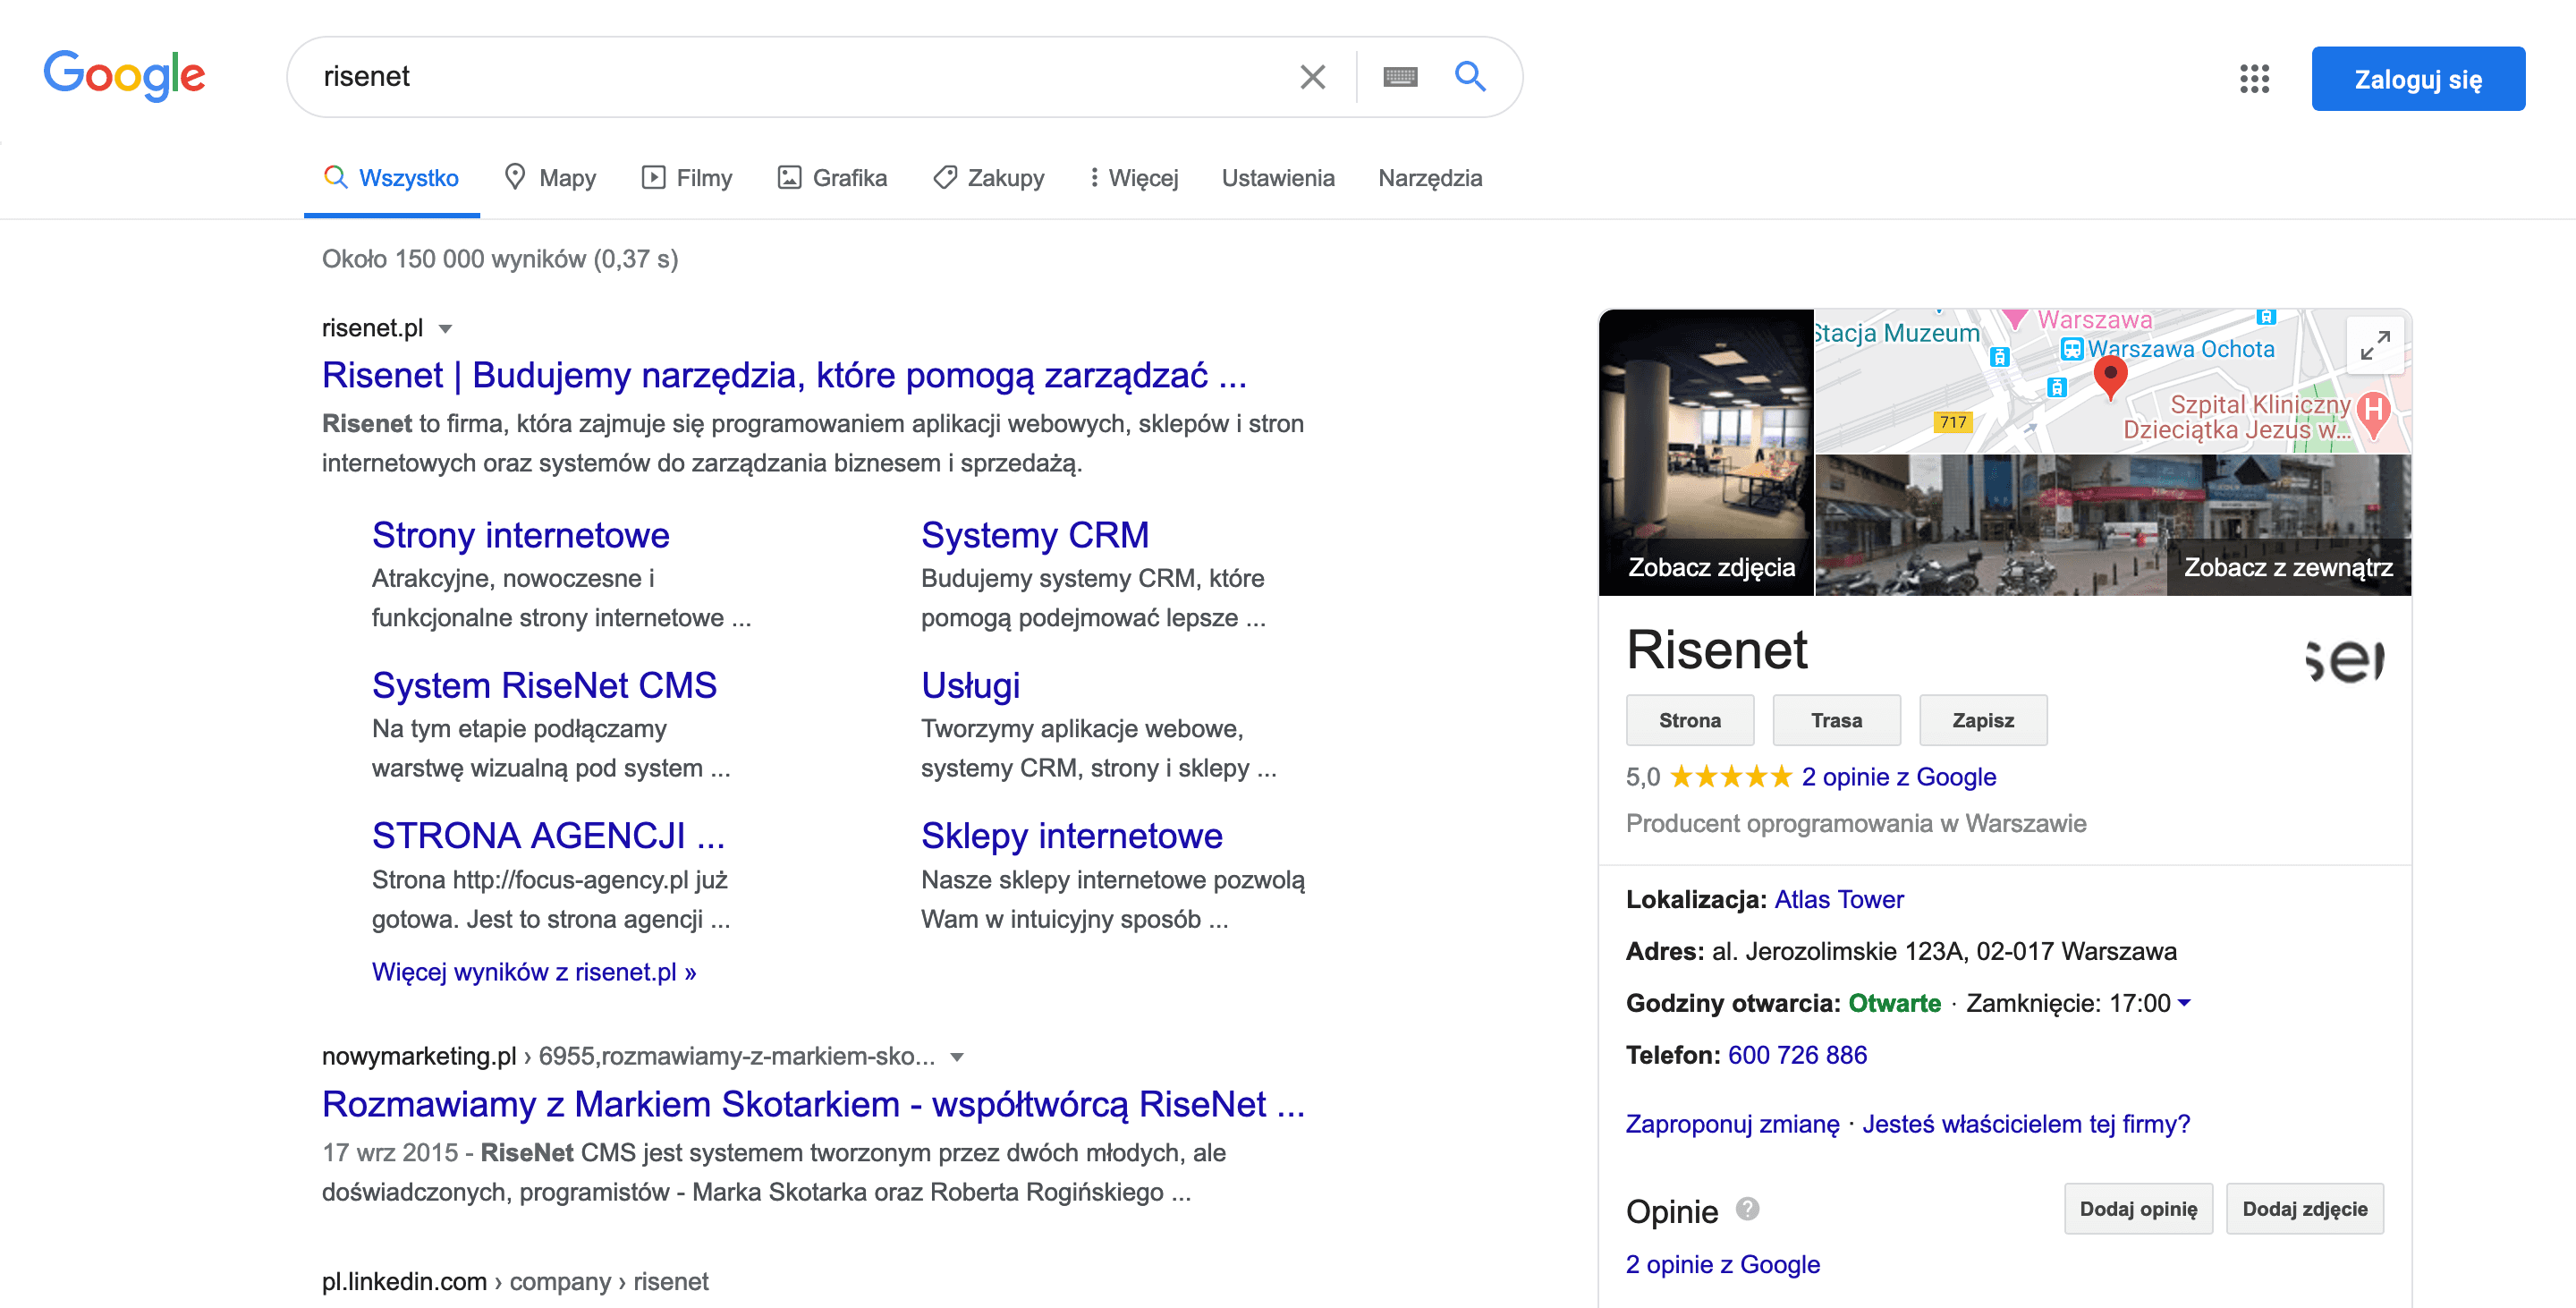 Google Moja Firma - wyszukiwarka